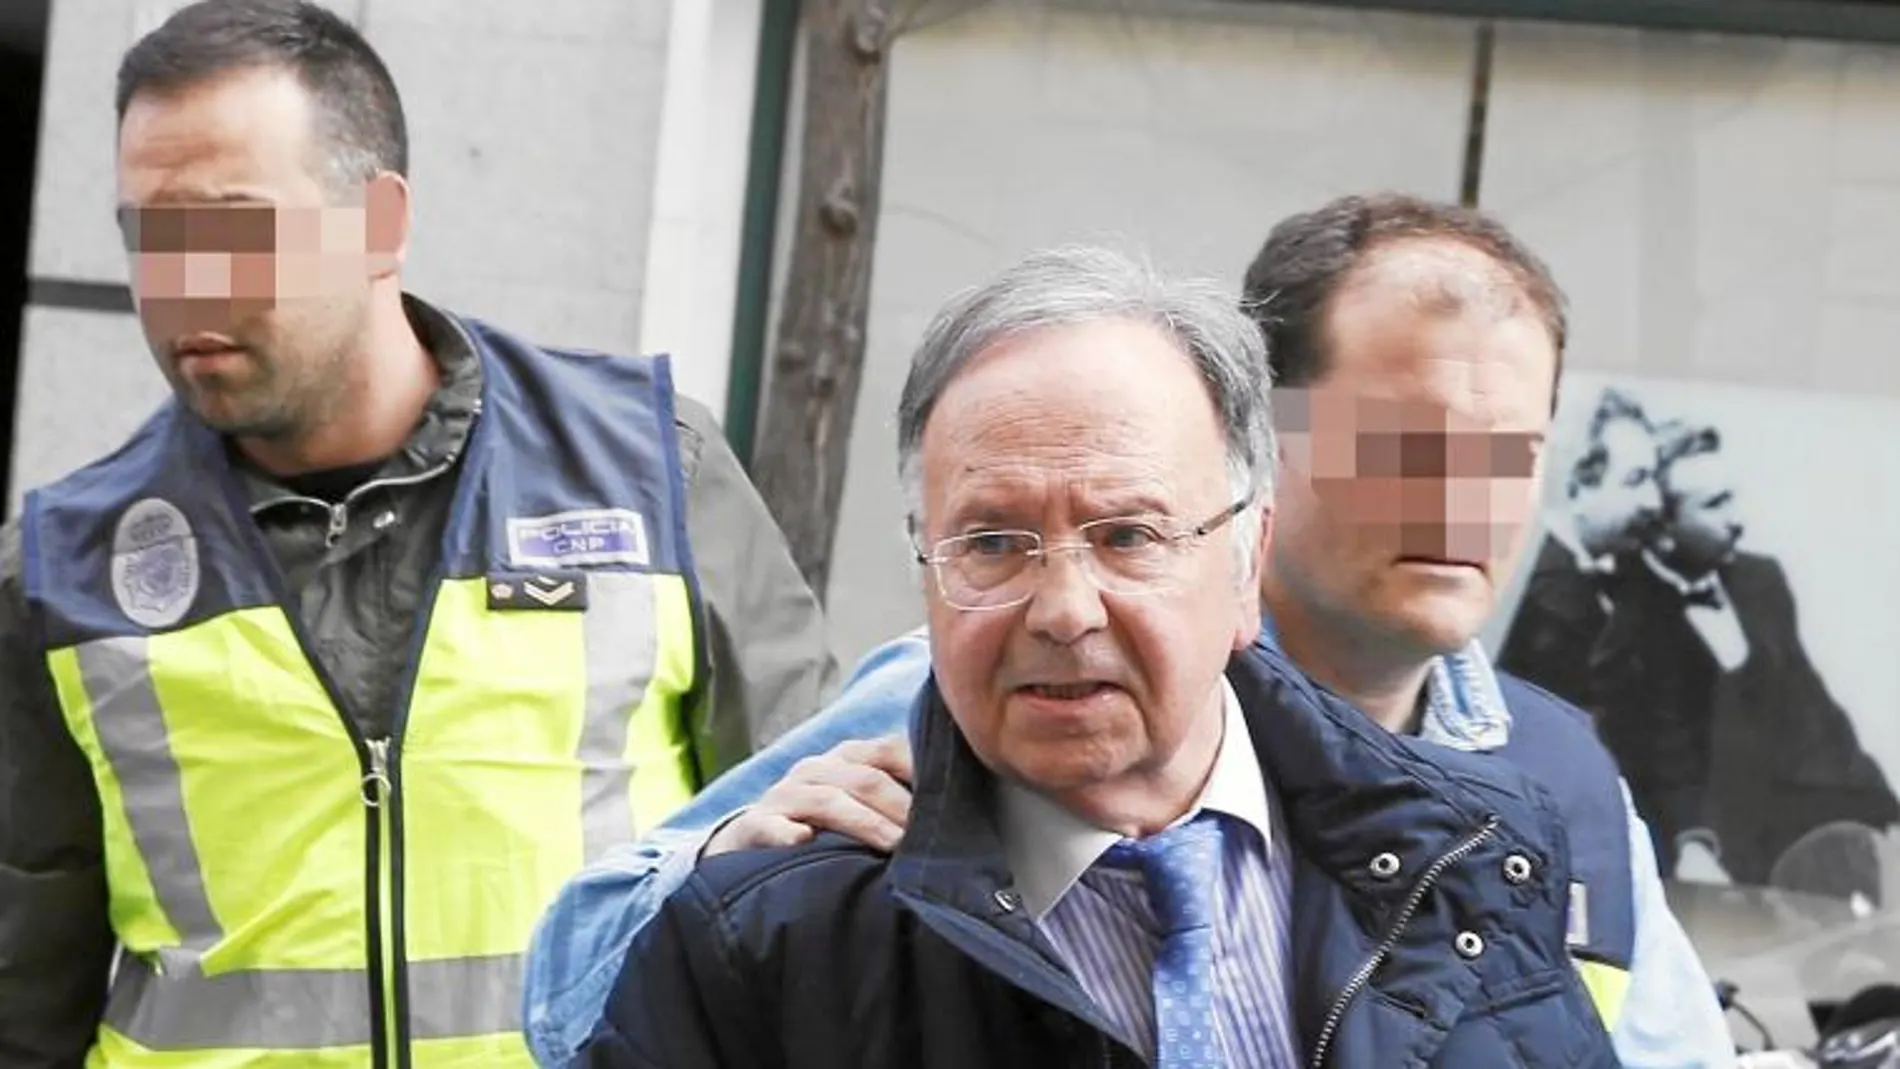 Bernad, secretario general de Manos Limpias, fue detenido el 15 de abril